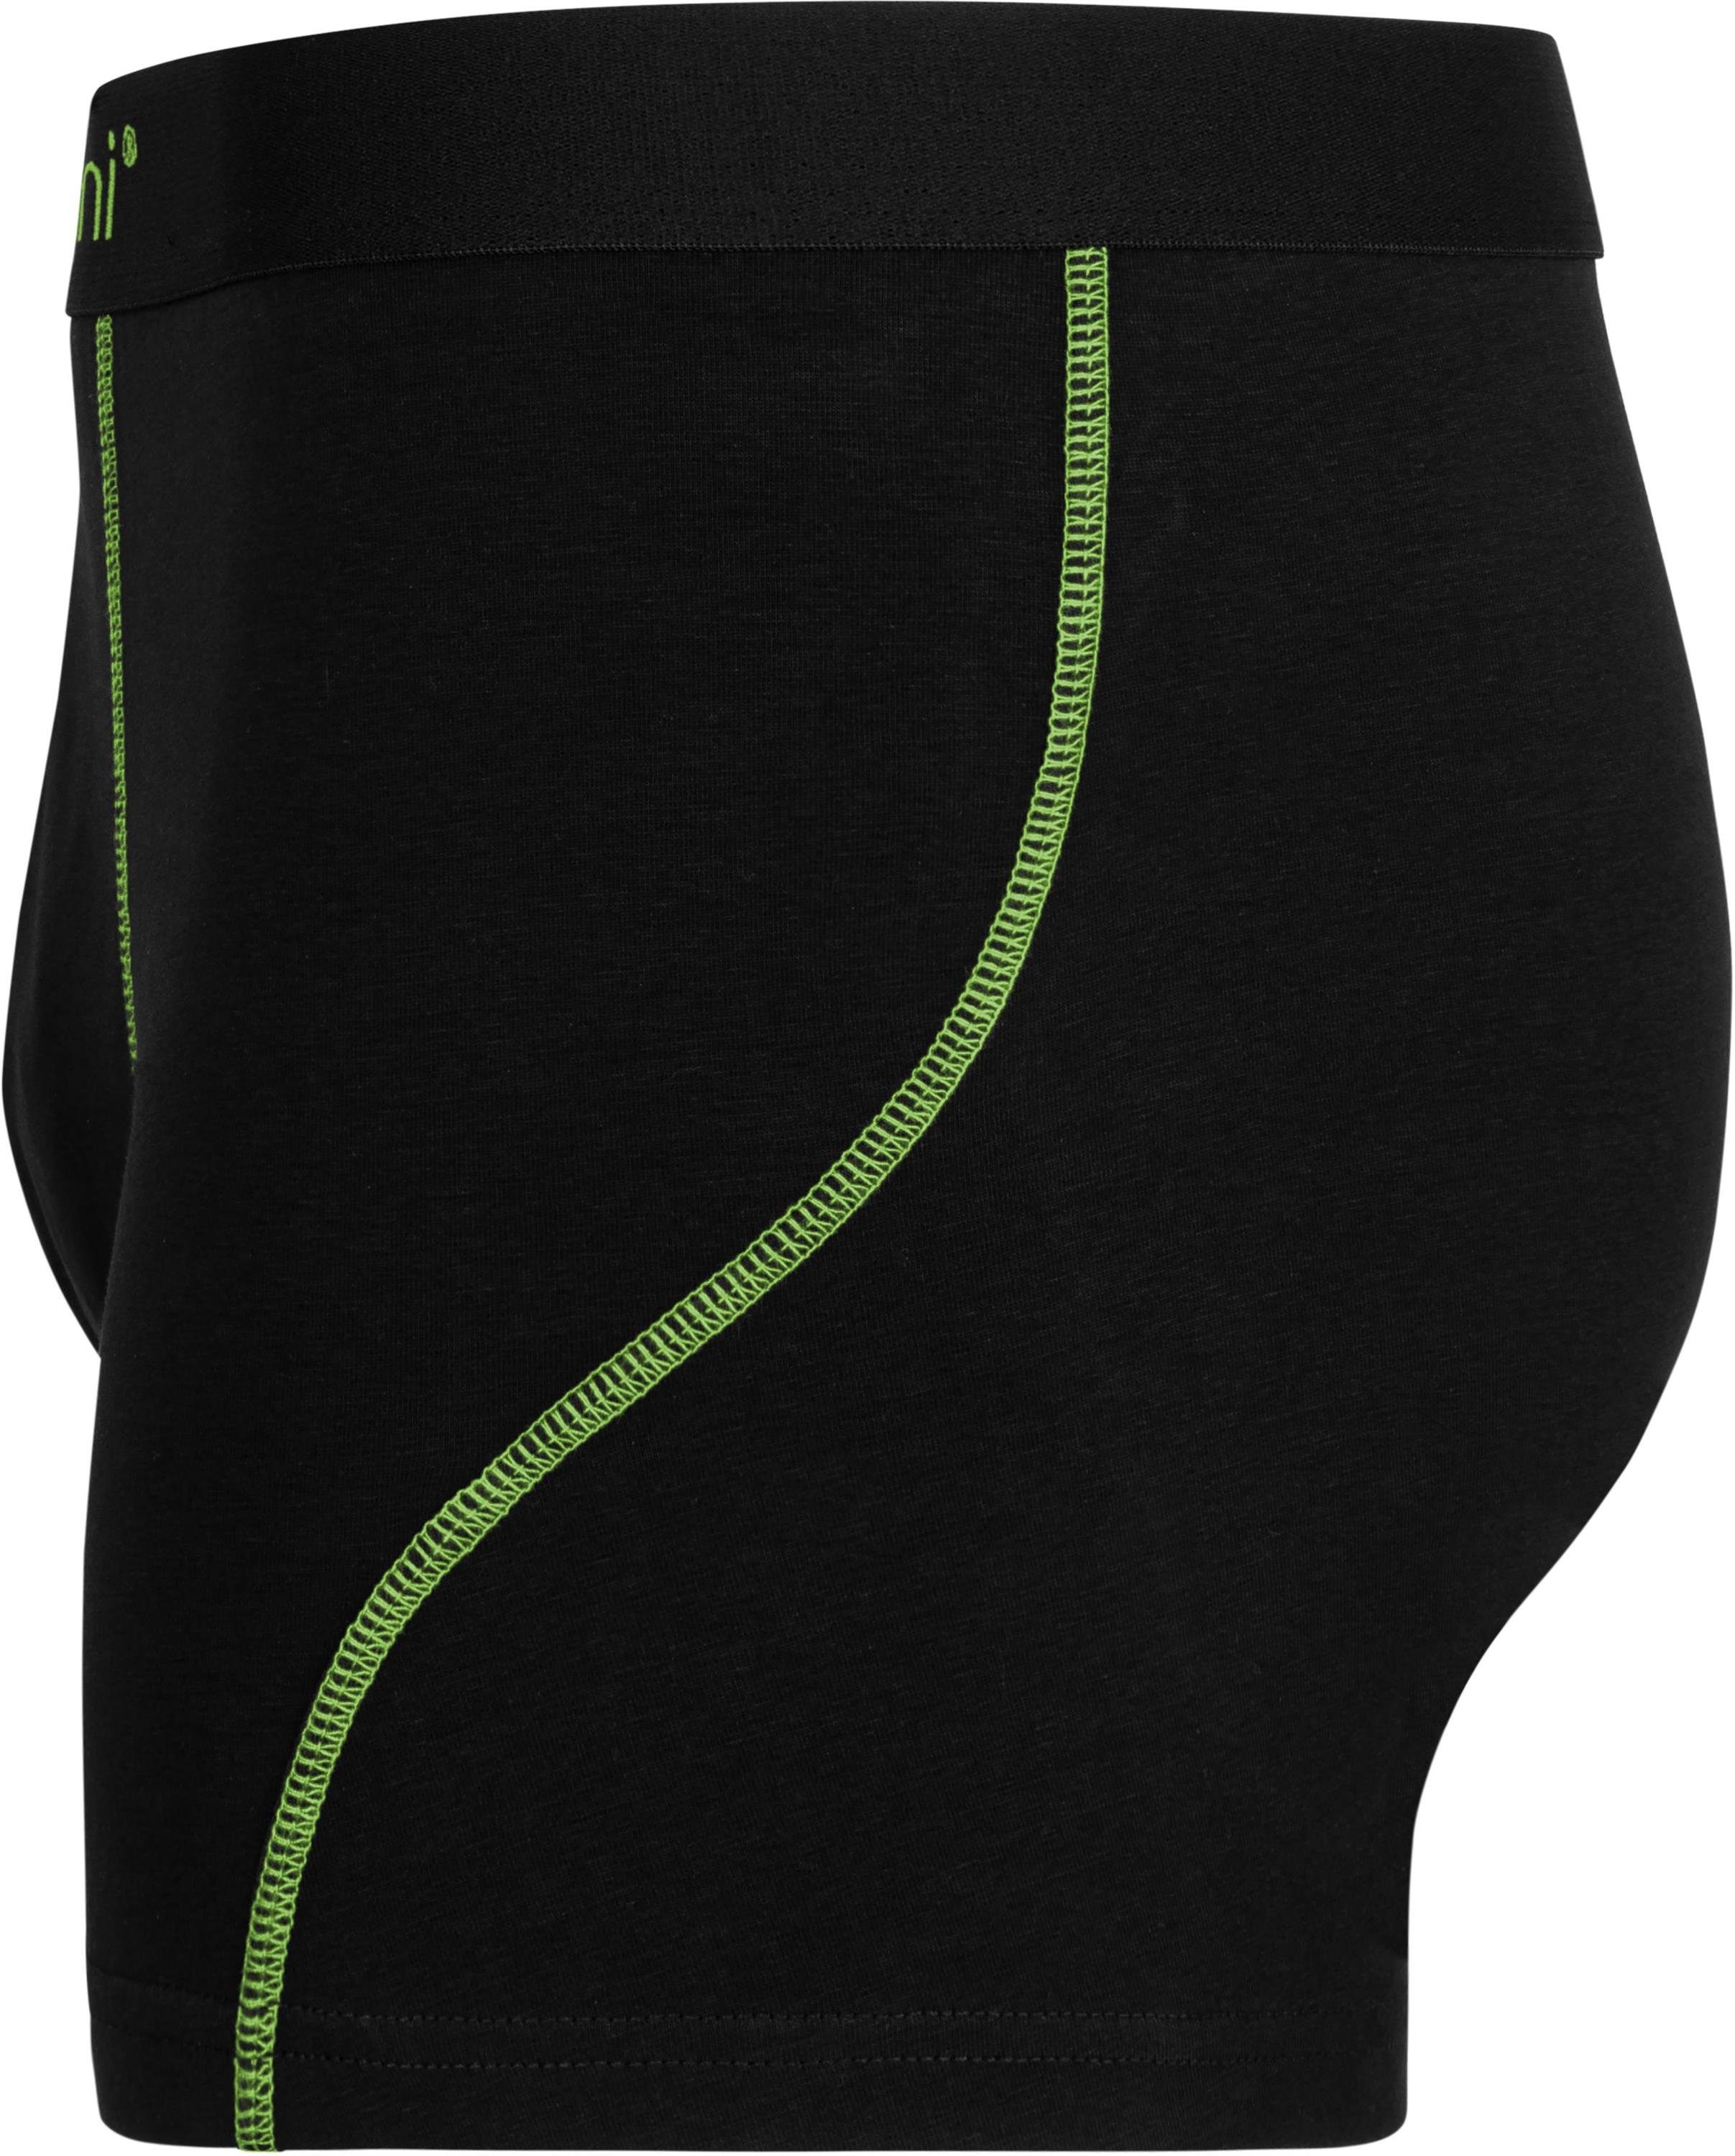 aus normani Baumwolle weiche Männer Boxershorts Grün Boxershorts Baumwolle Unterhose 6 aus atmungsaktiver für